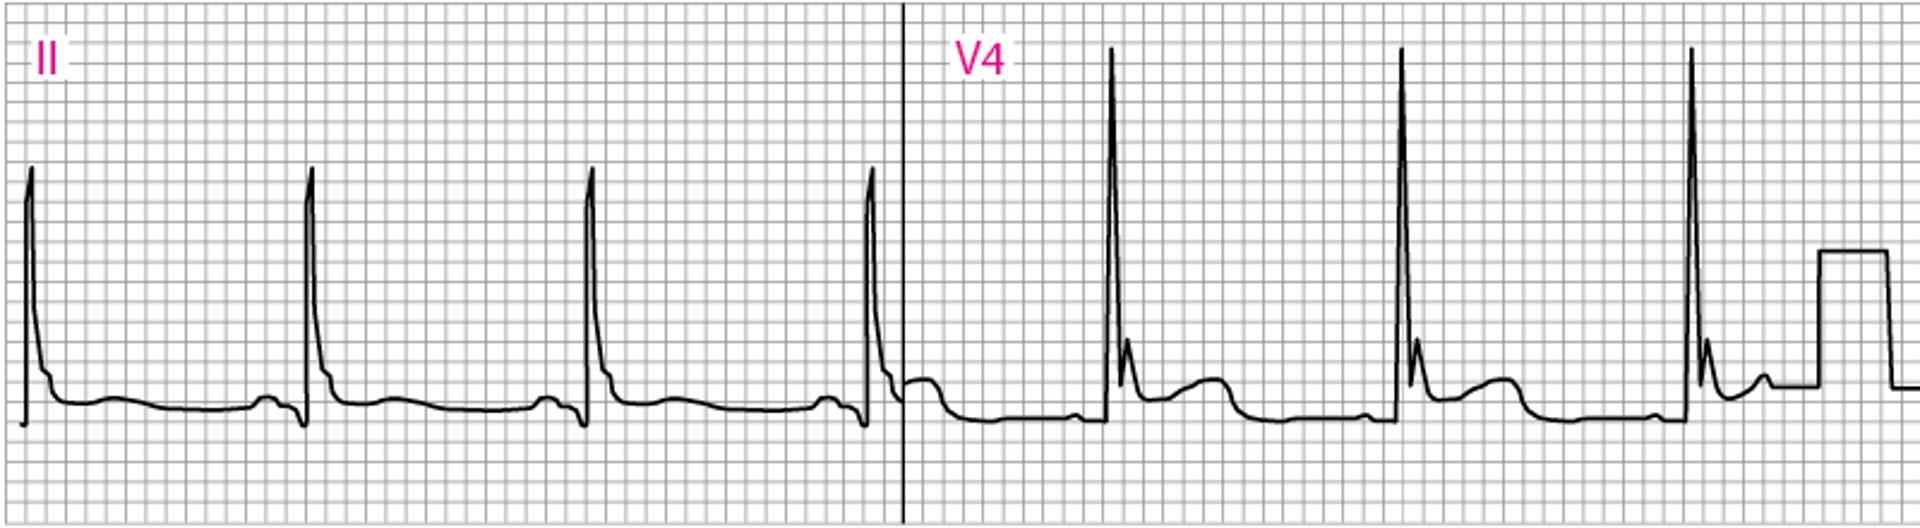 El ECG anormal muestra ondas J (Osborn) (V4)